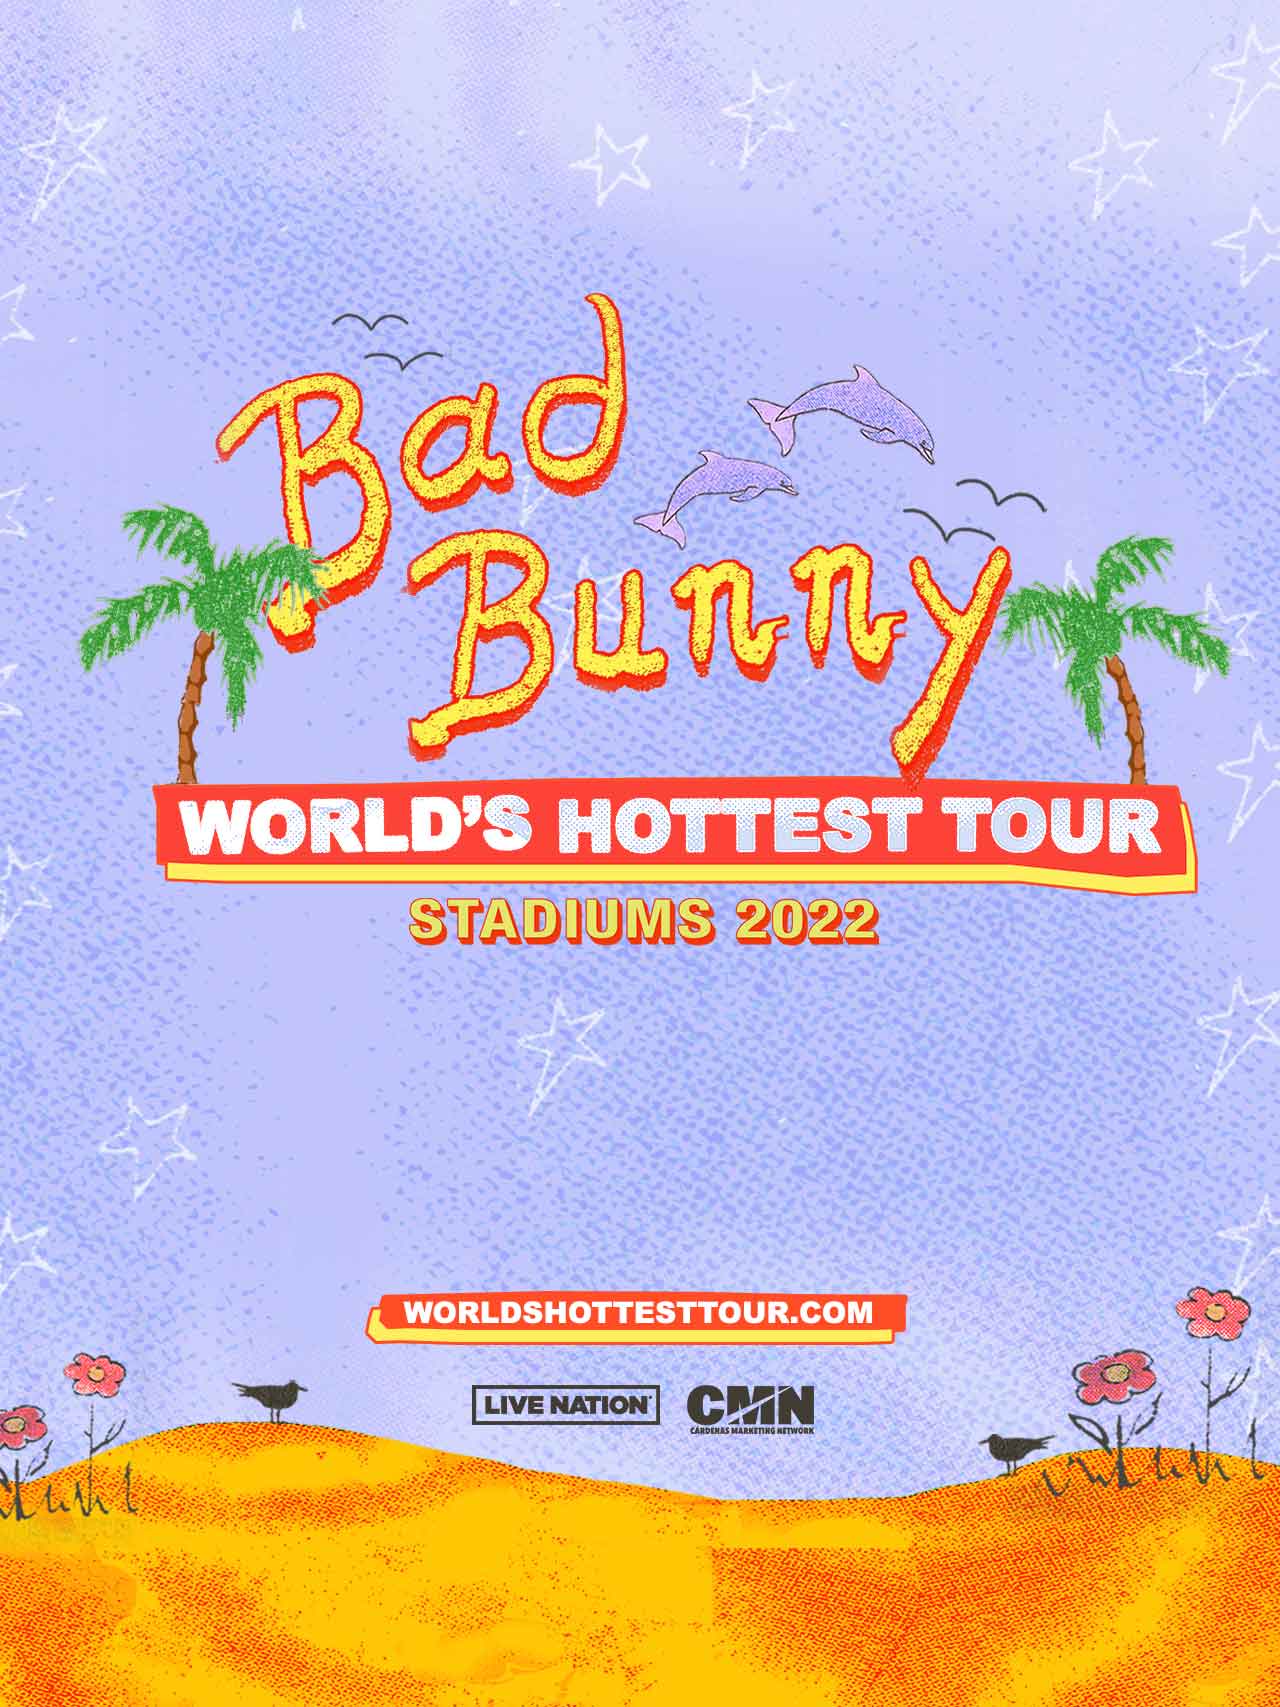 World's Hottest Tour